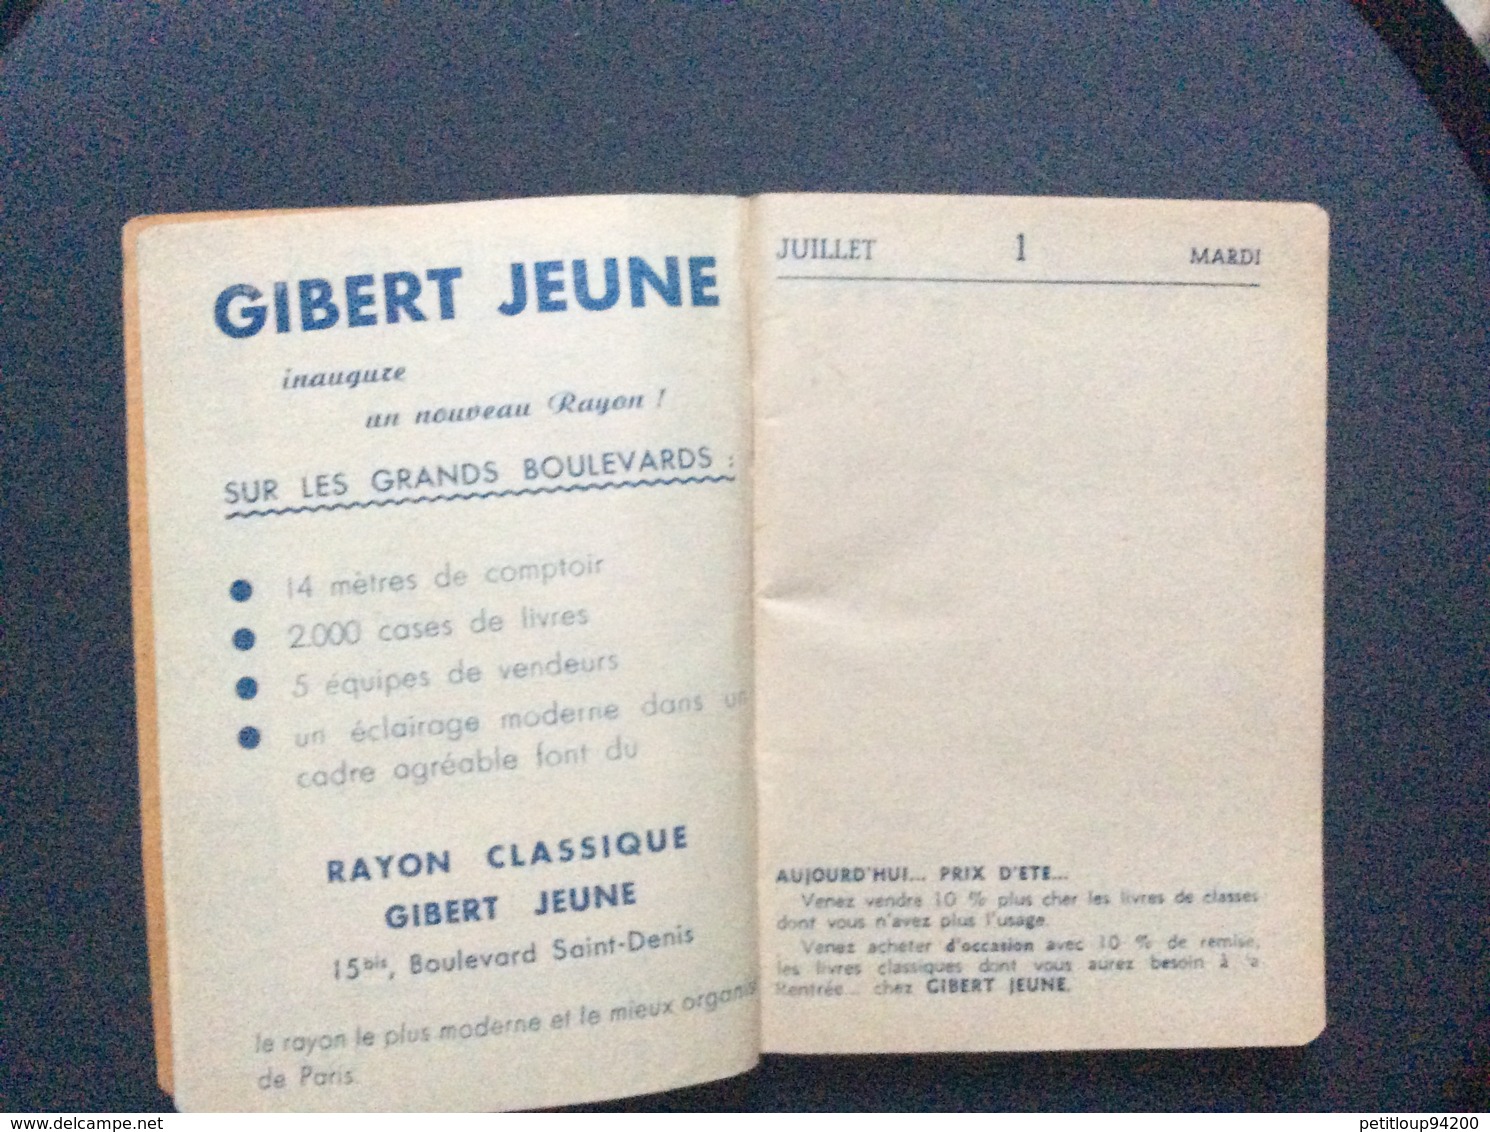 GIBERT JEUNE  Agenda Photo-Guide  ANNÉE 1952  Agenda Vierge - Agendas Vierges